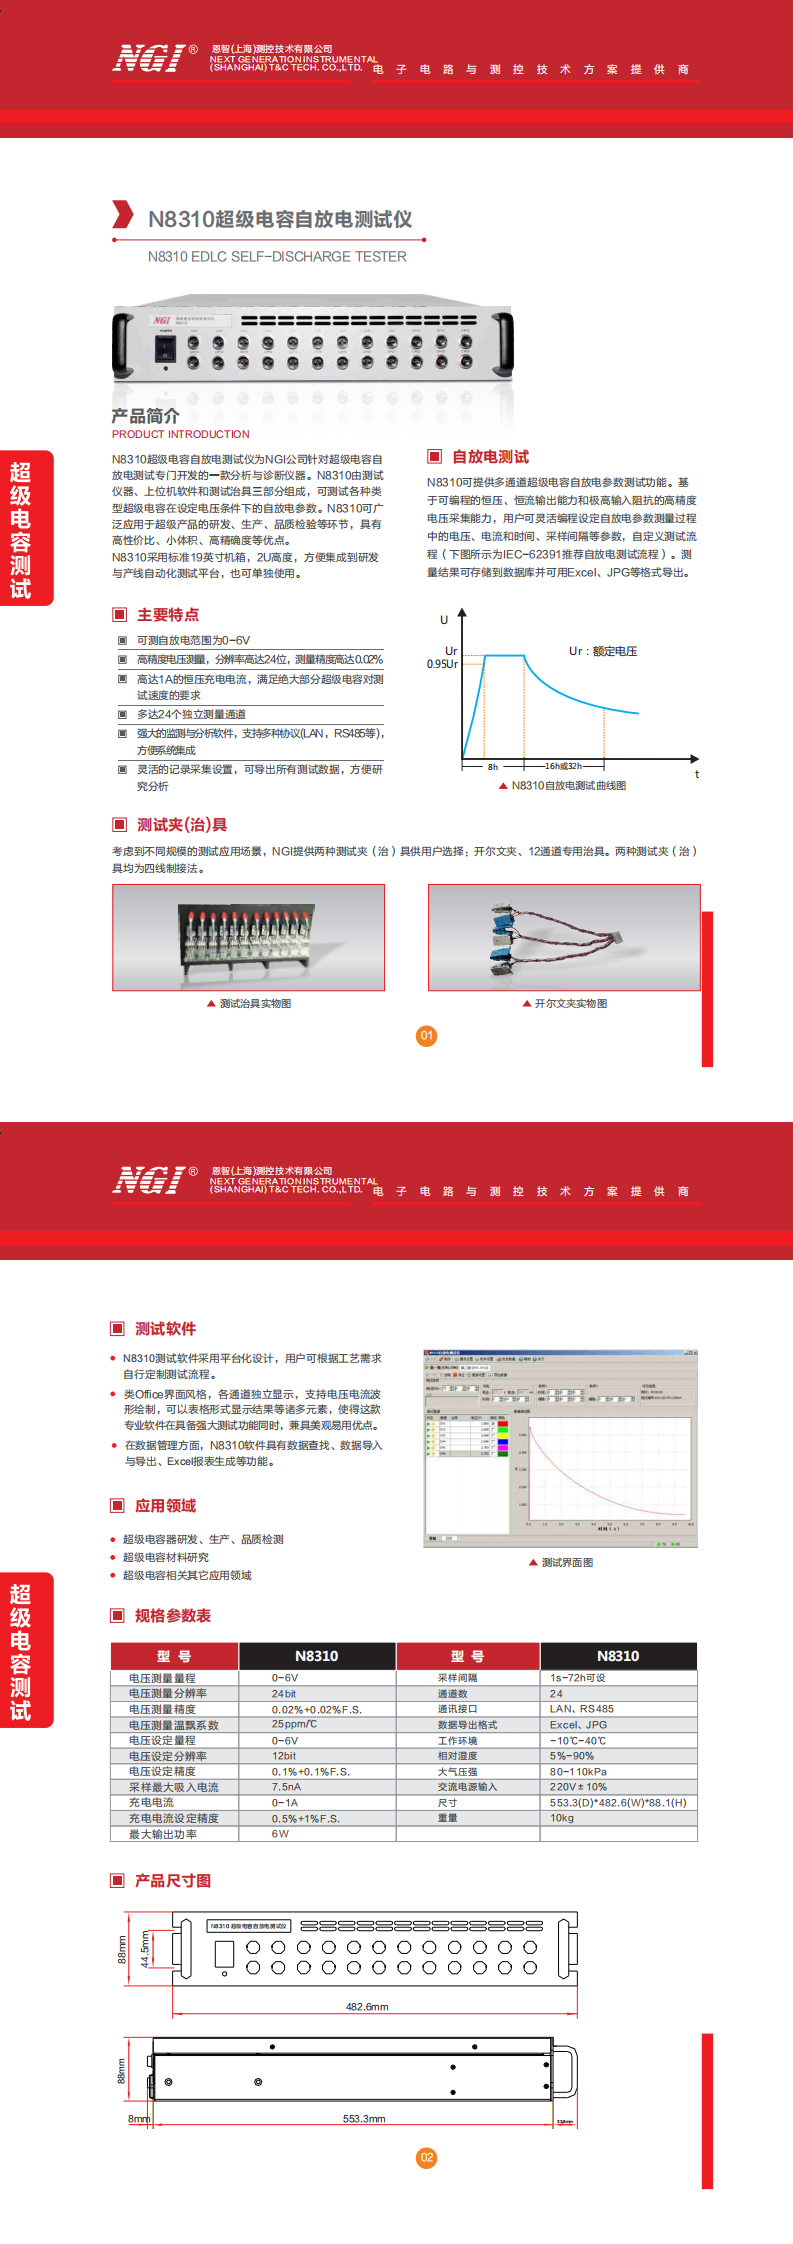 N8310超级电容自放电测试仪_0.png